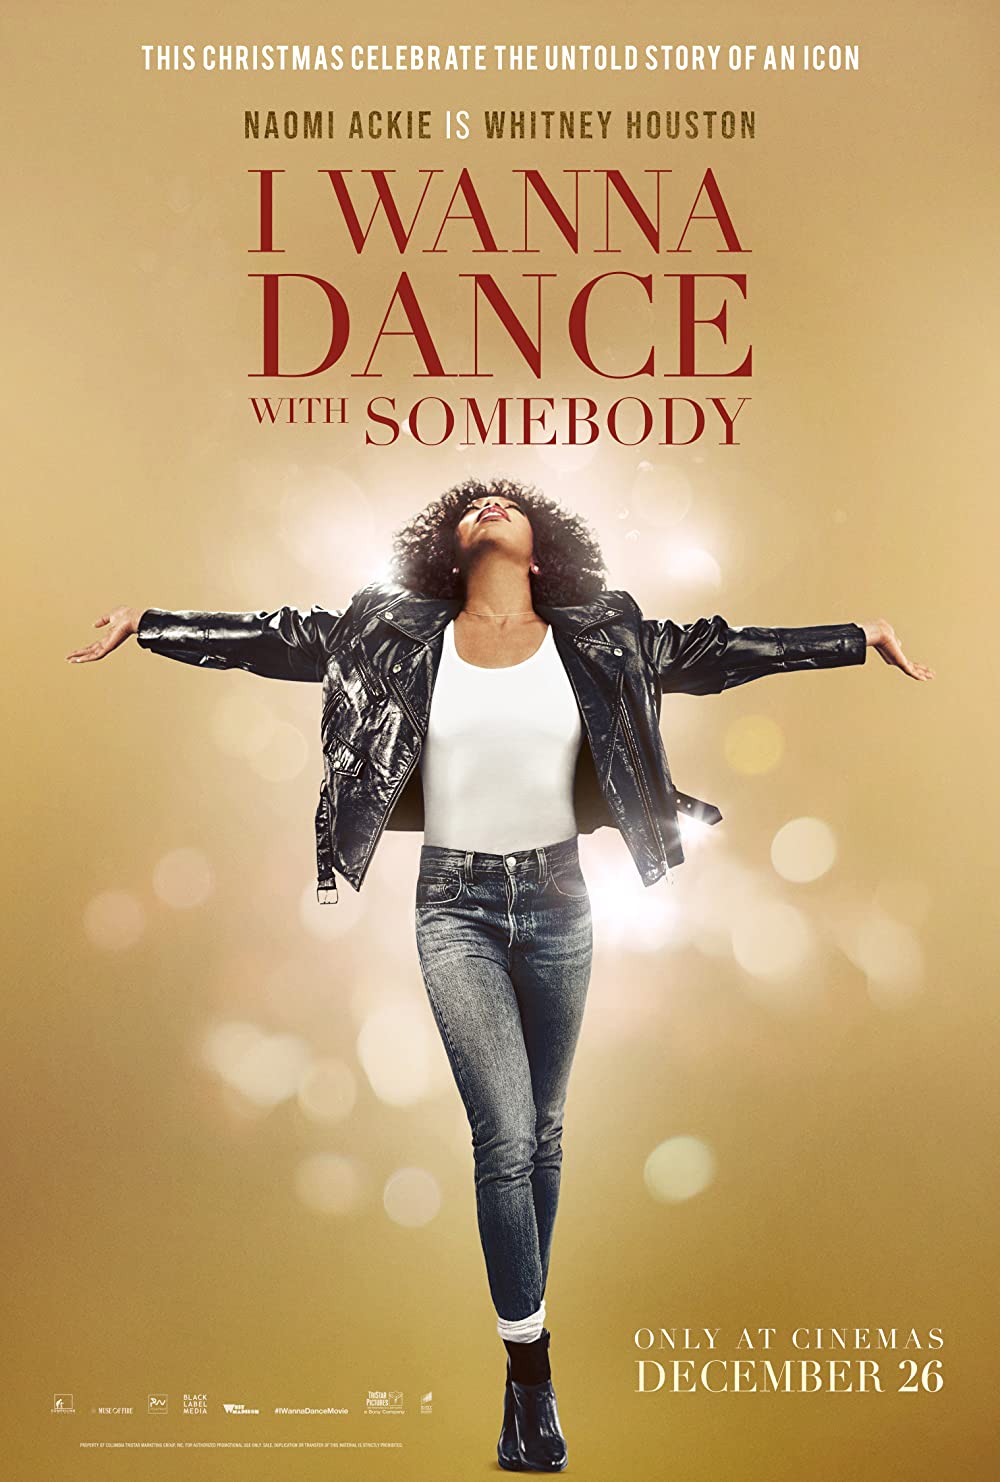 Whitney Houston: I Wanna Dance with Somebody Parents Guide | Whitney Houston: I Wanna Dance with Somebody Rating 2022